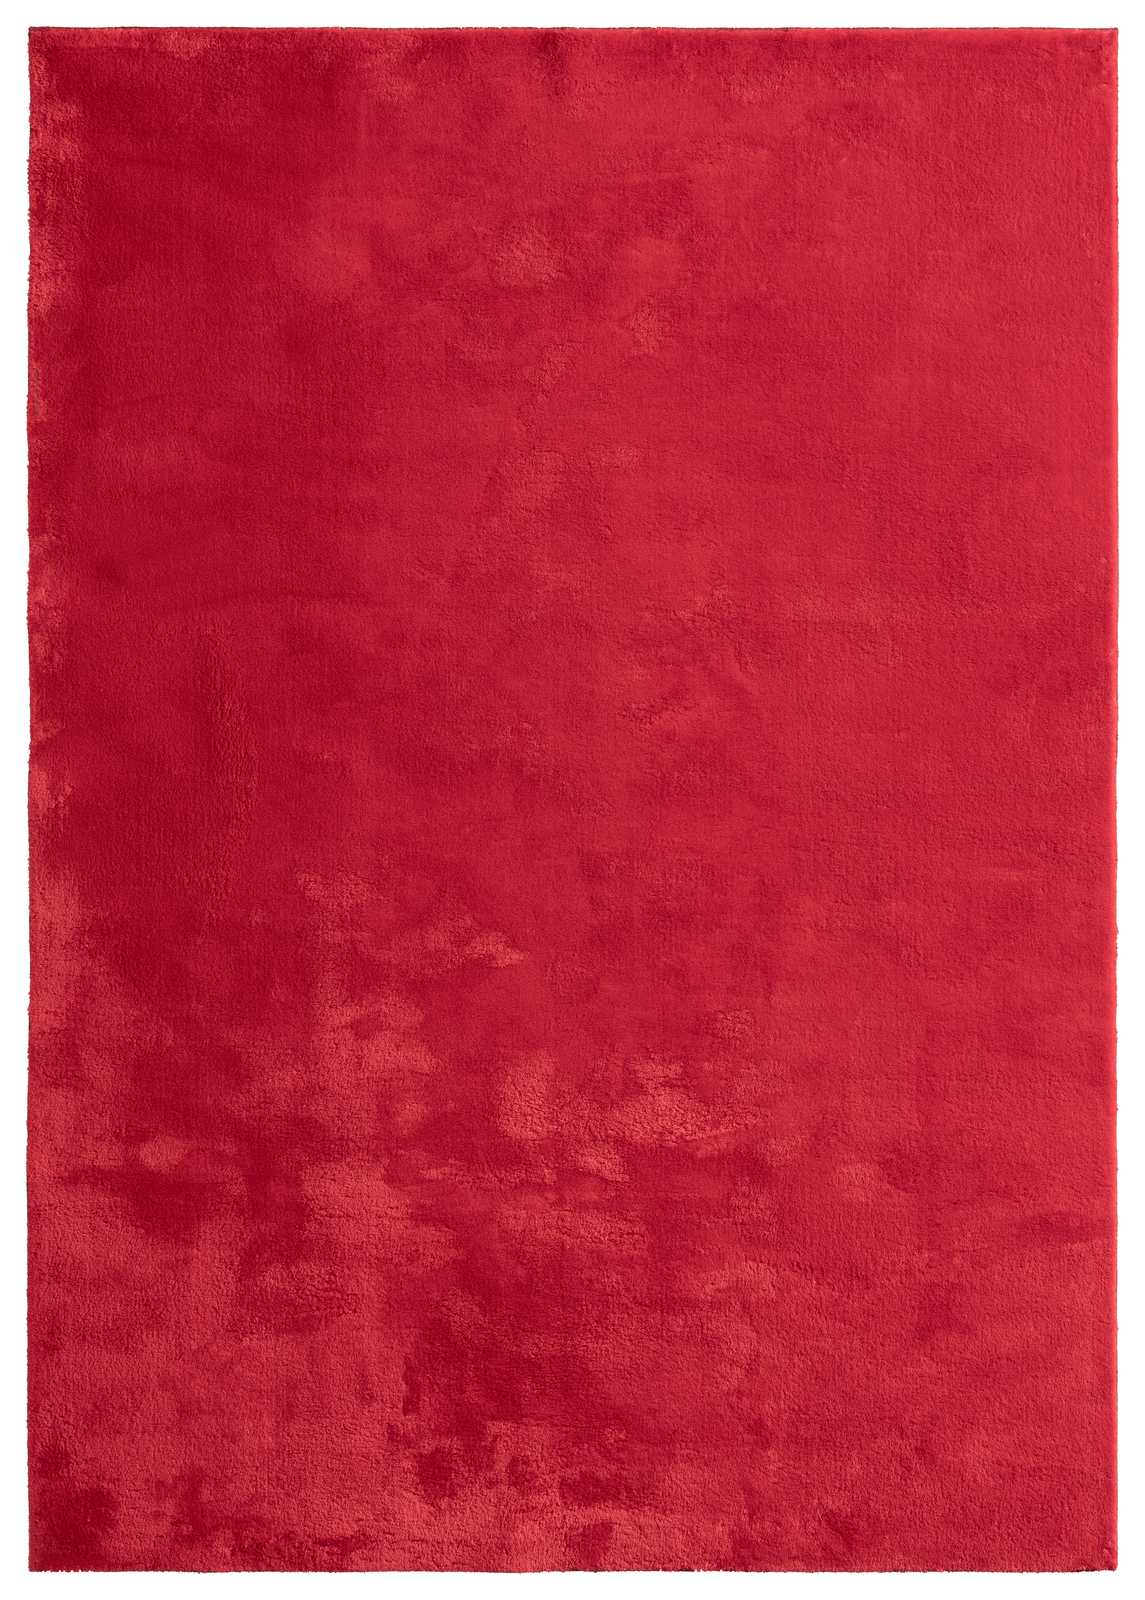             Besonders weicher Hochflor Teppich in Rot – 240 x 200 cm
        